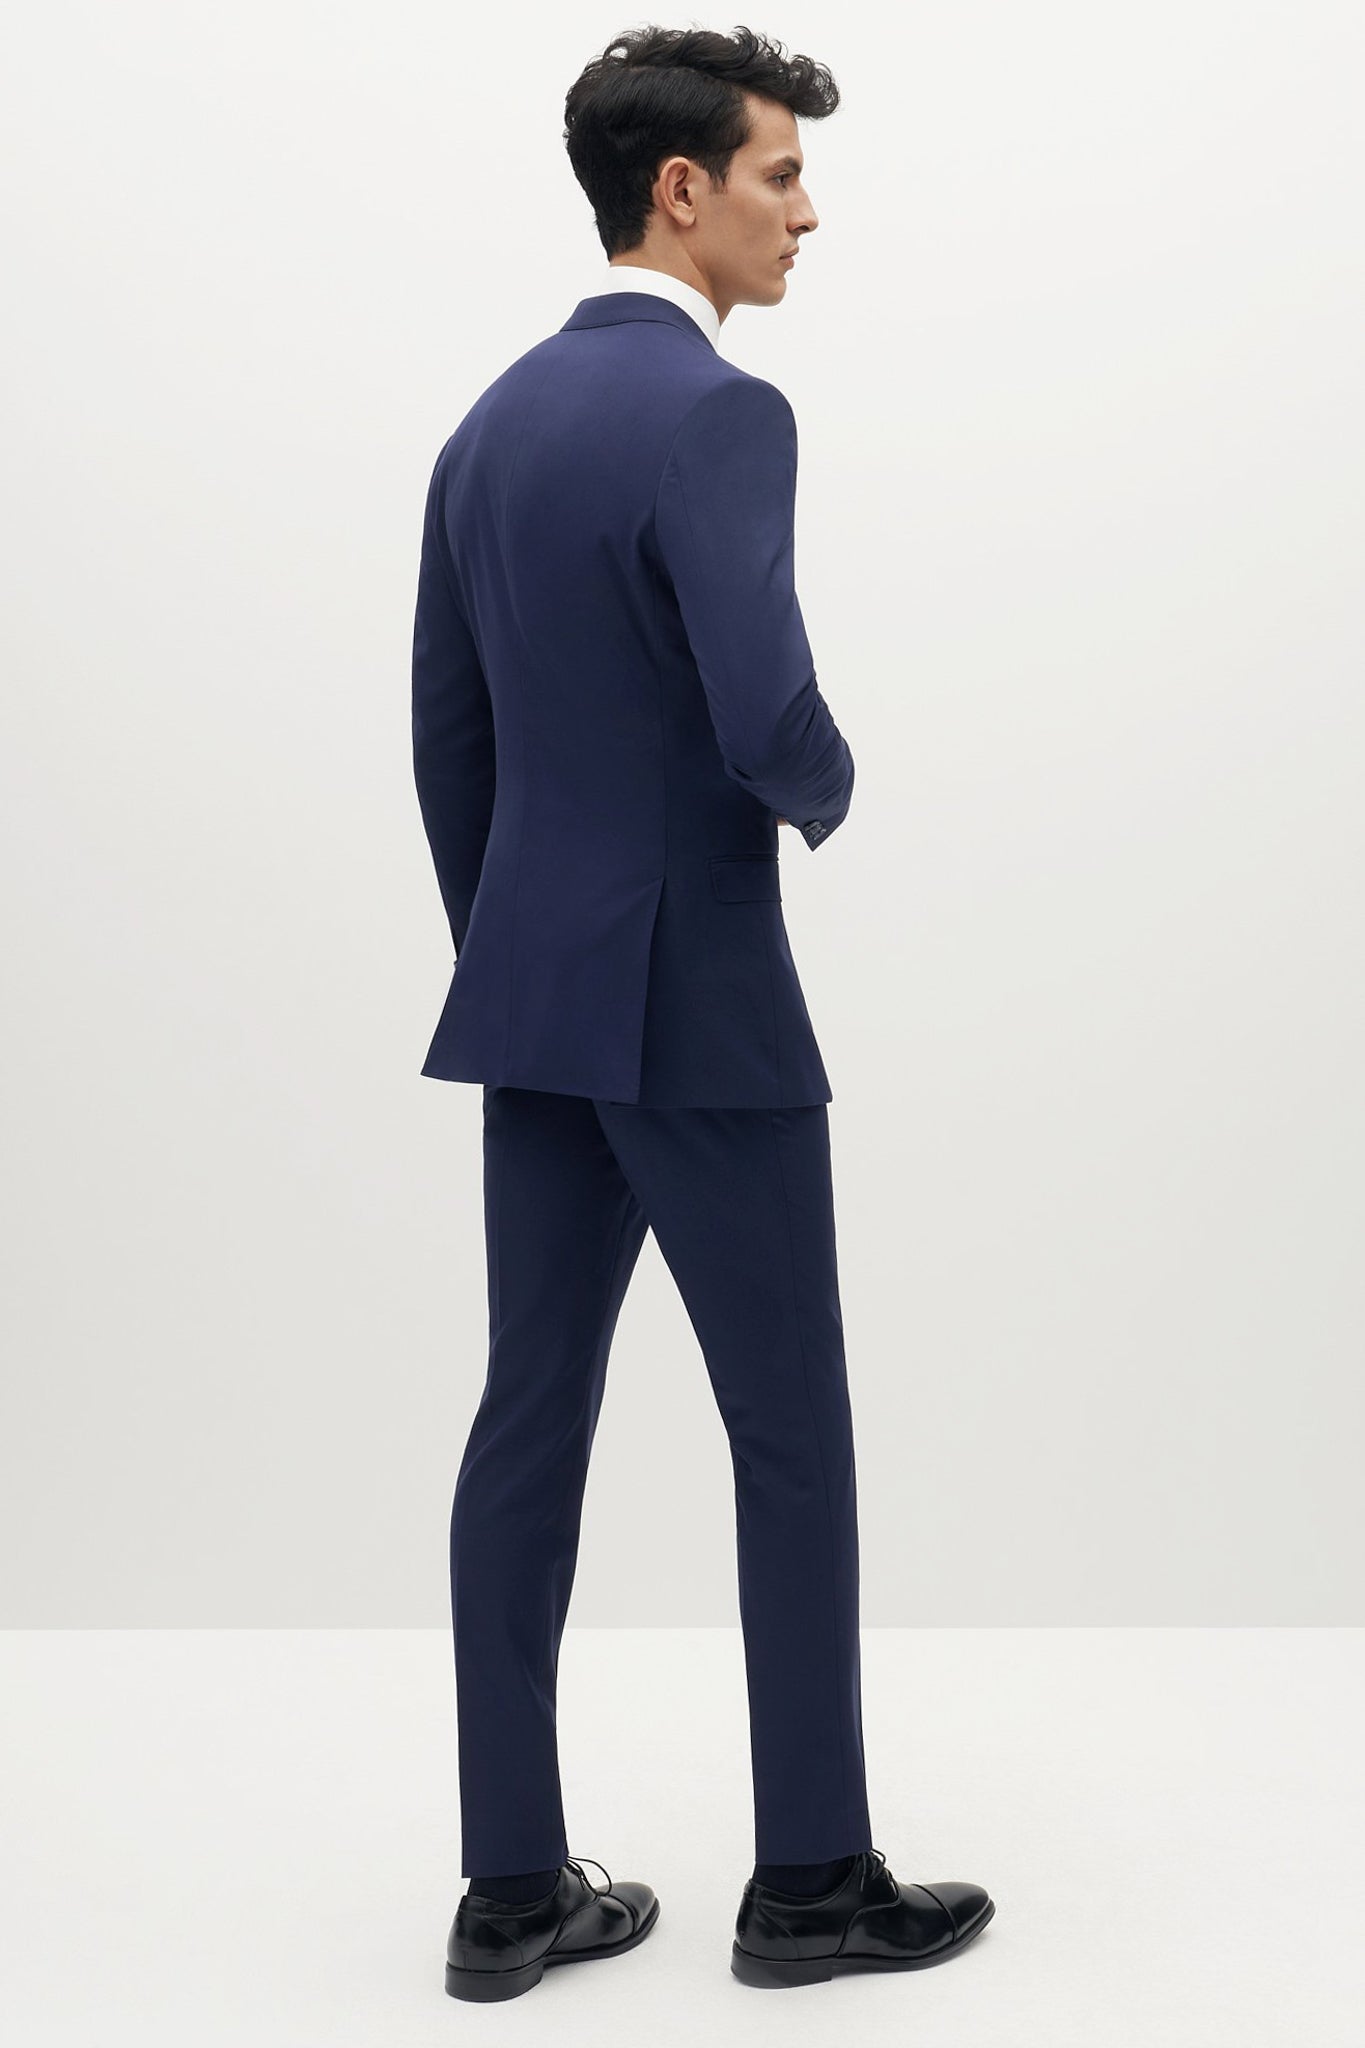 Brilliant Blue Groomsmen Suit by SuitShop, back view